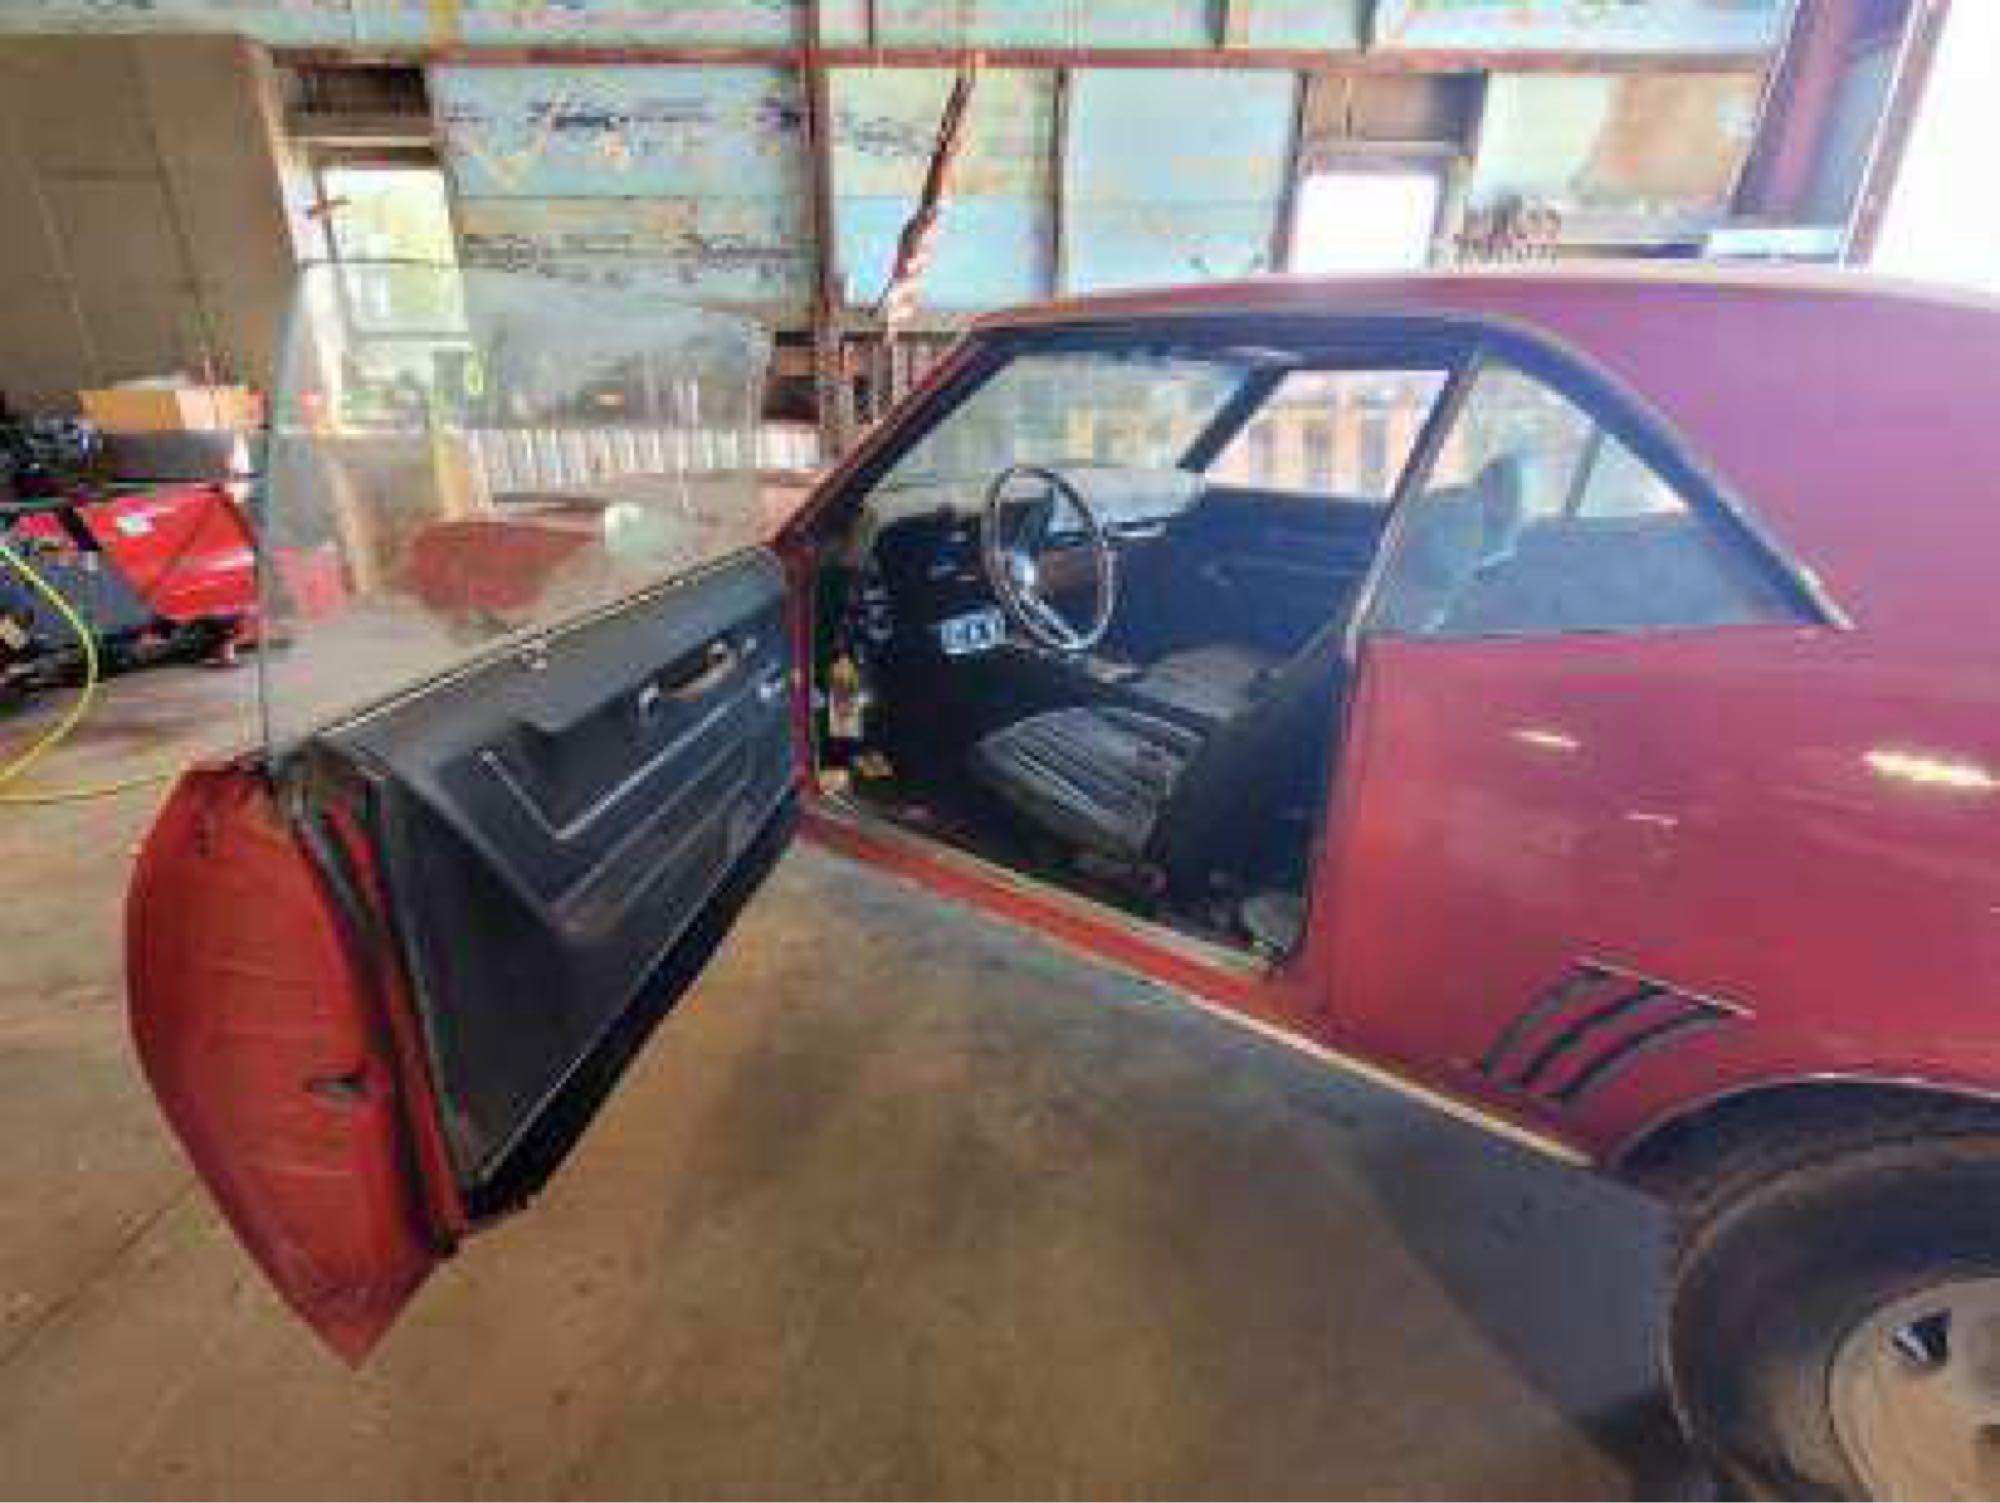 1969 Camaro SS No carb under air filter. Abandoned vehicle no keys